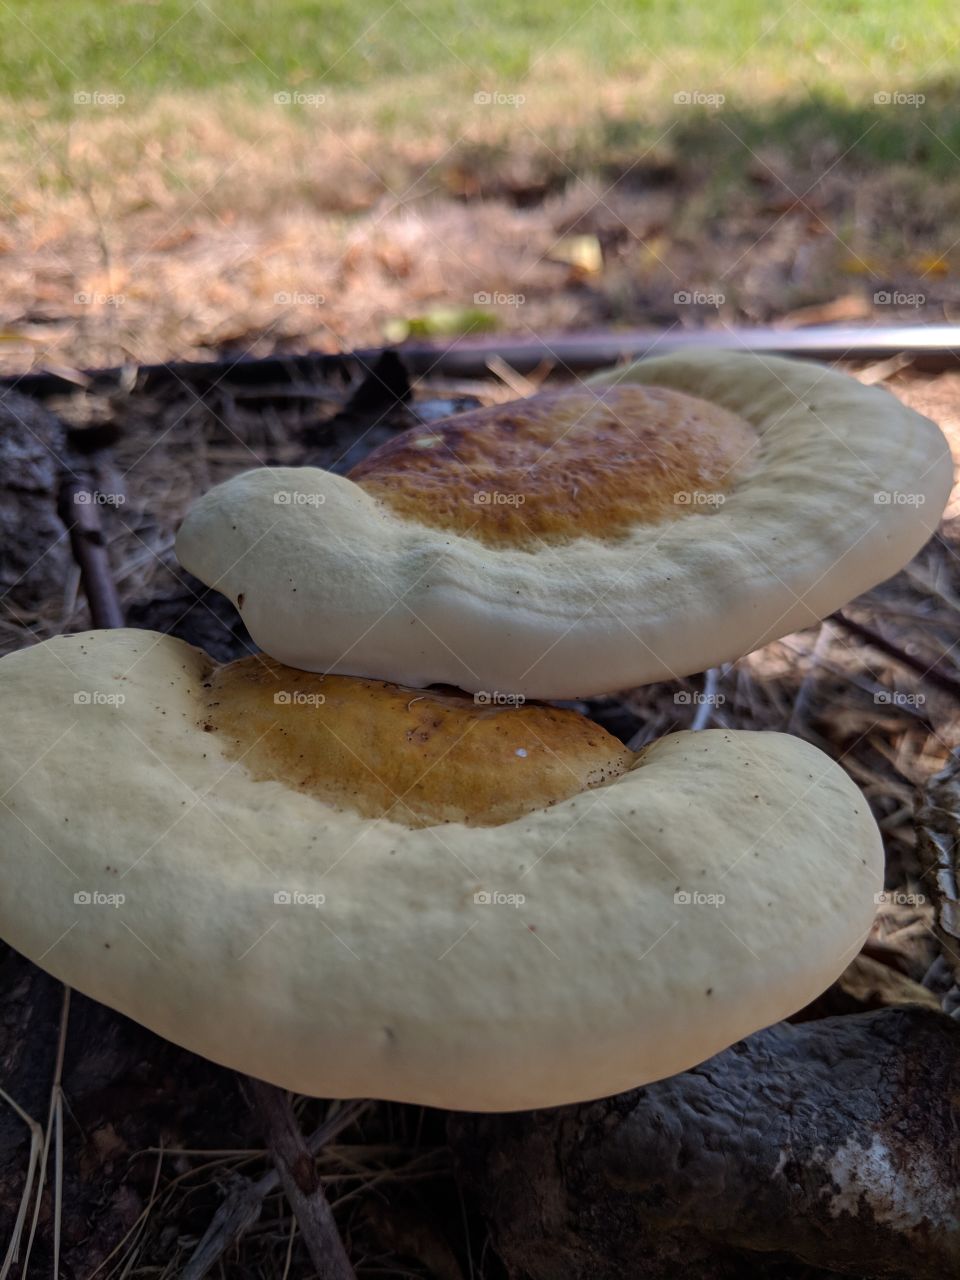 unusual mushrooms